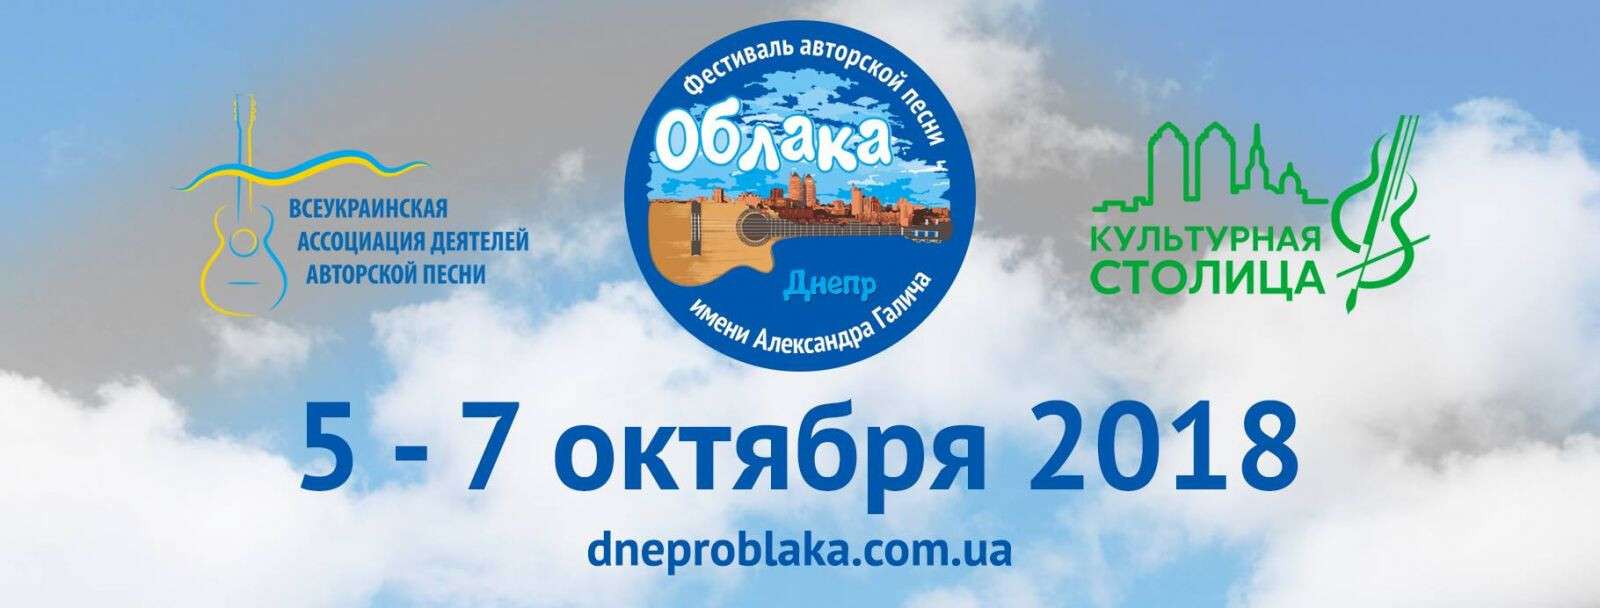 В Днепре состоится III Международный фестиваль авторской песни «Облака» им. Александра Галича